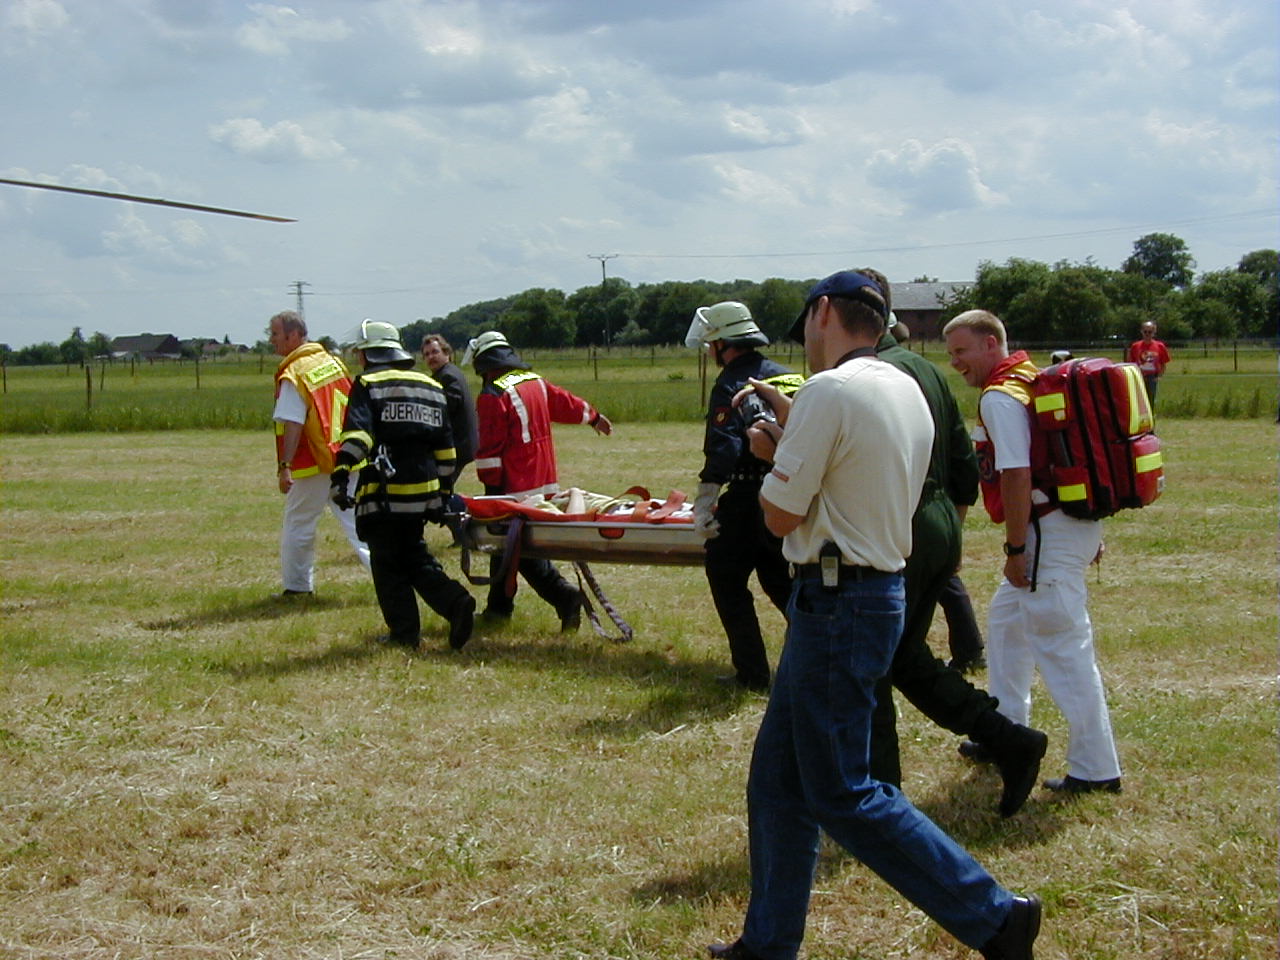 Zur VerfÃ¼gung gestellt von Juergen Maas, Freiwillige Feuerwehr Neukirchen-Vluyn
Der "Patient" wird zum Hubschrauber gebracht.
